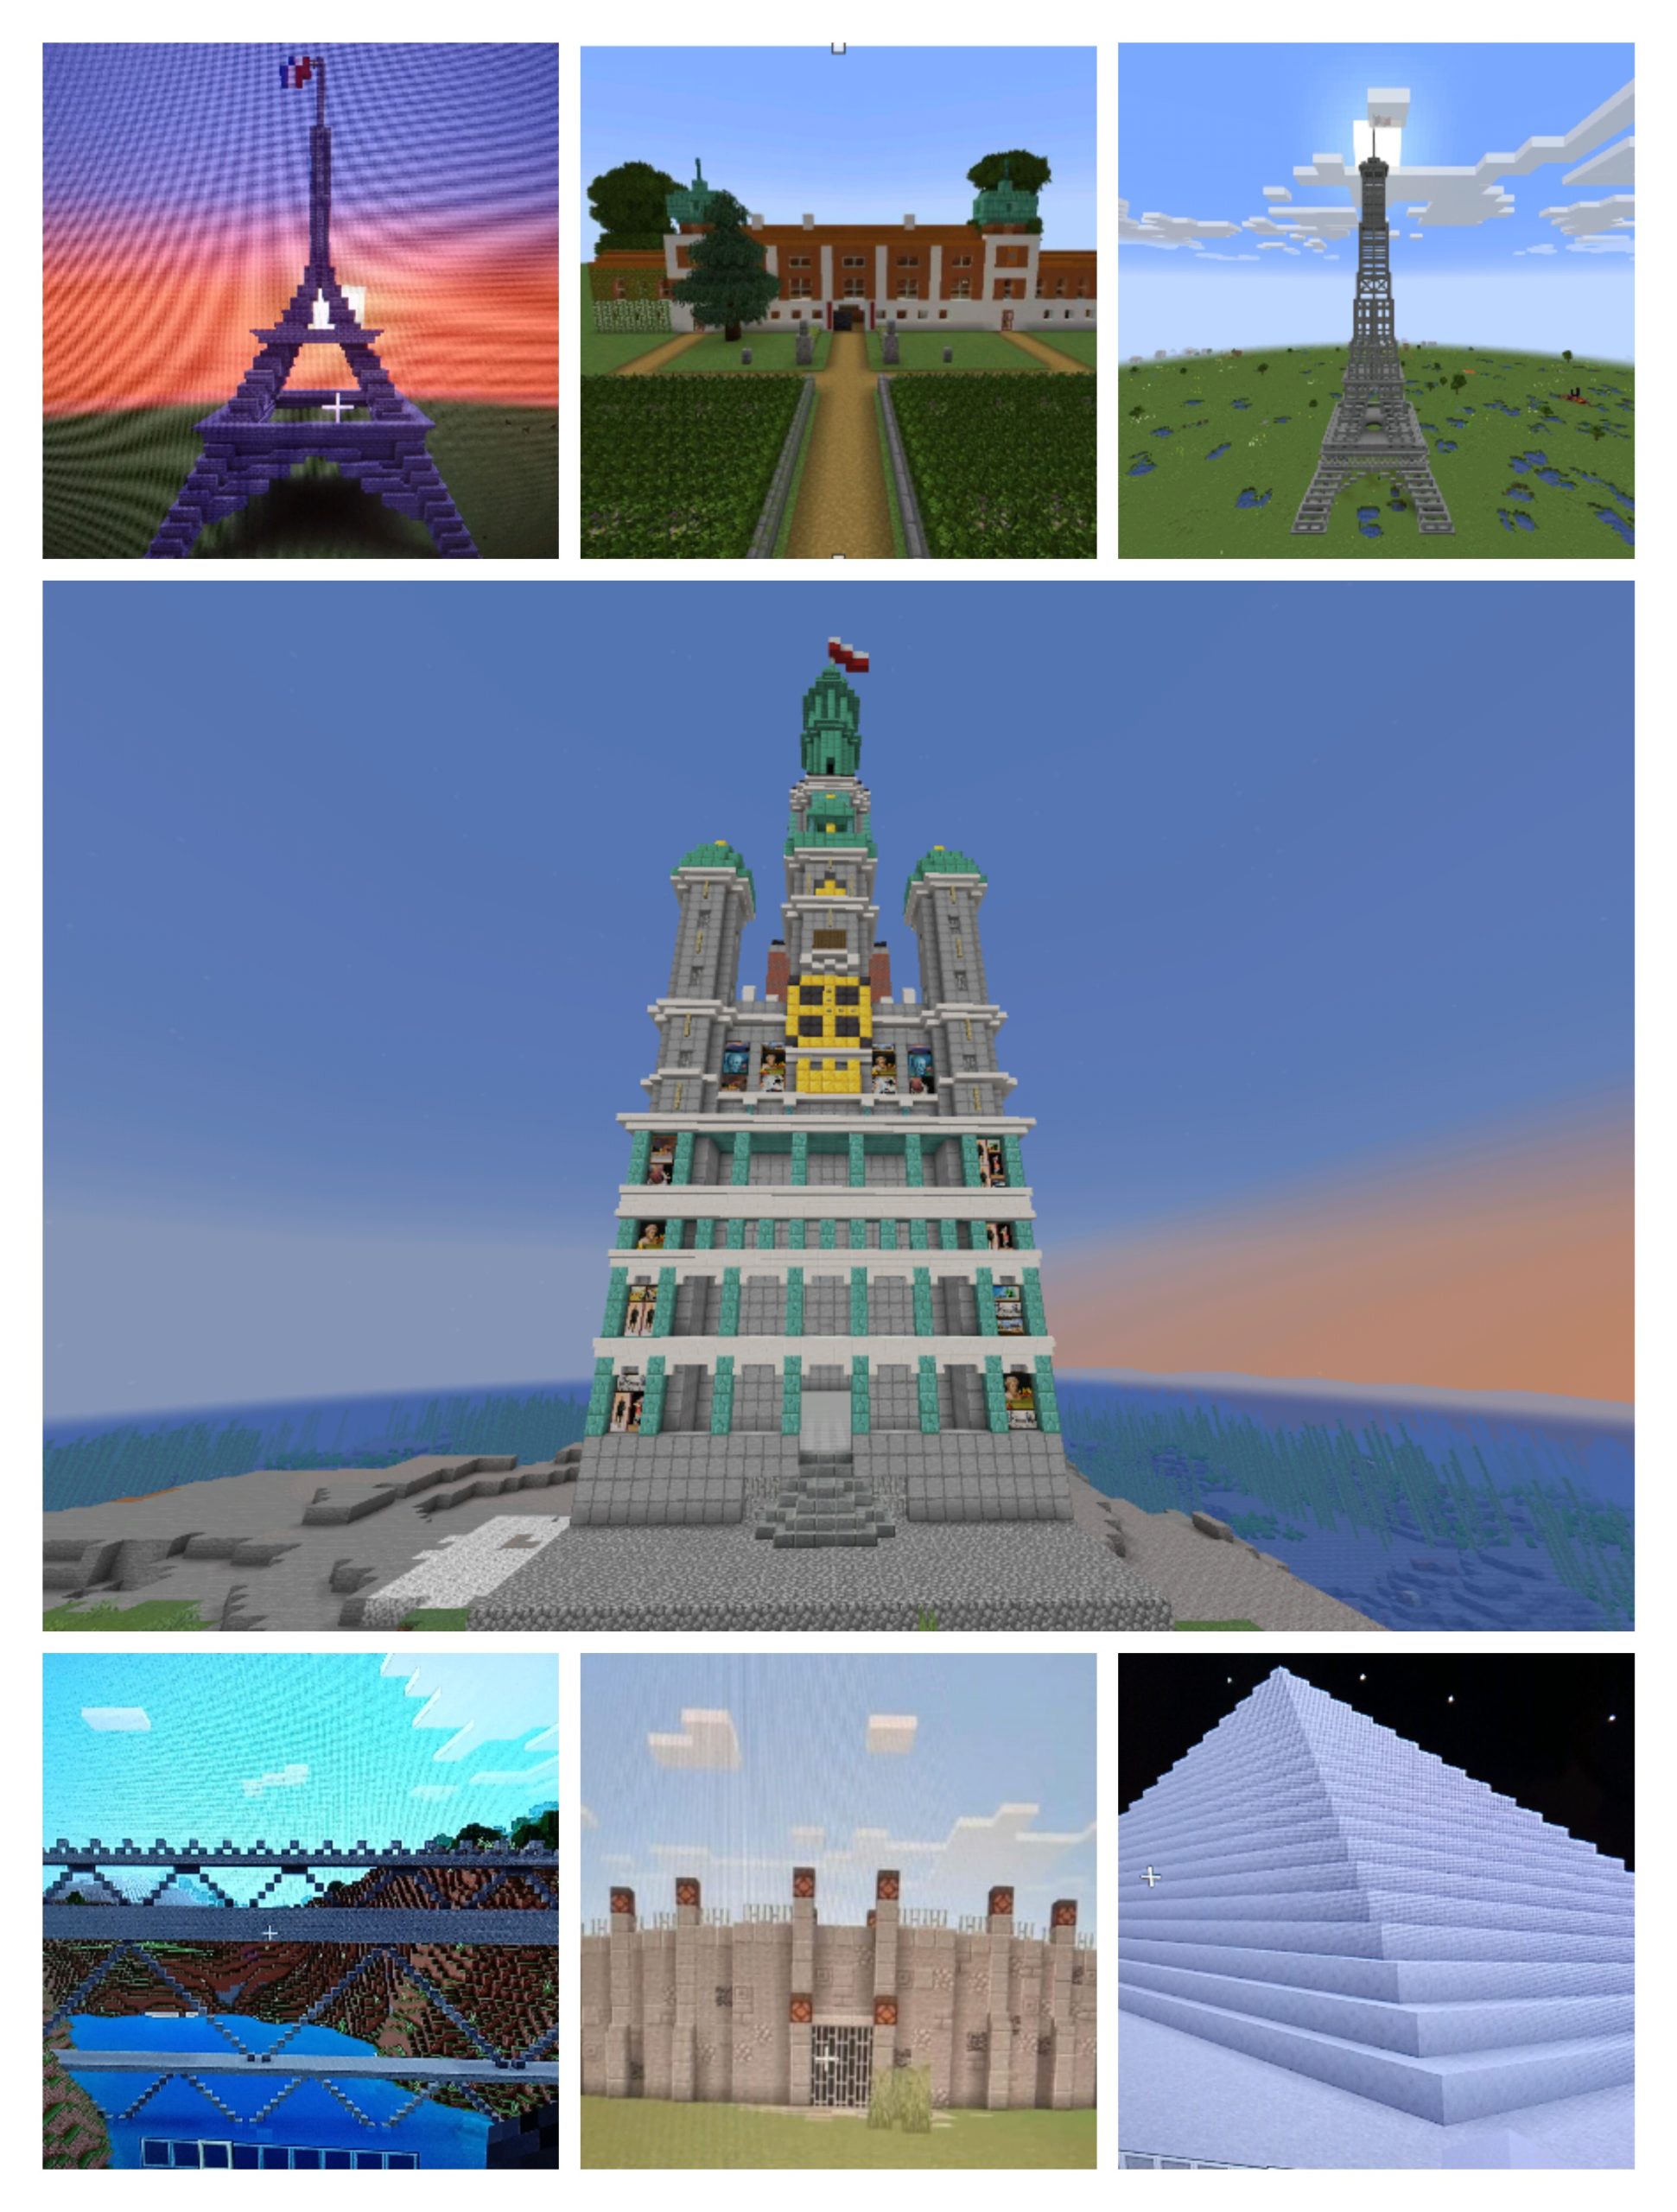 Obiekty historyczne wykonane w grze Minecraft.